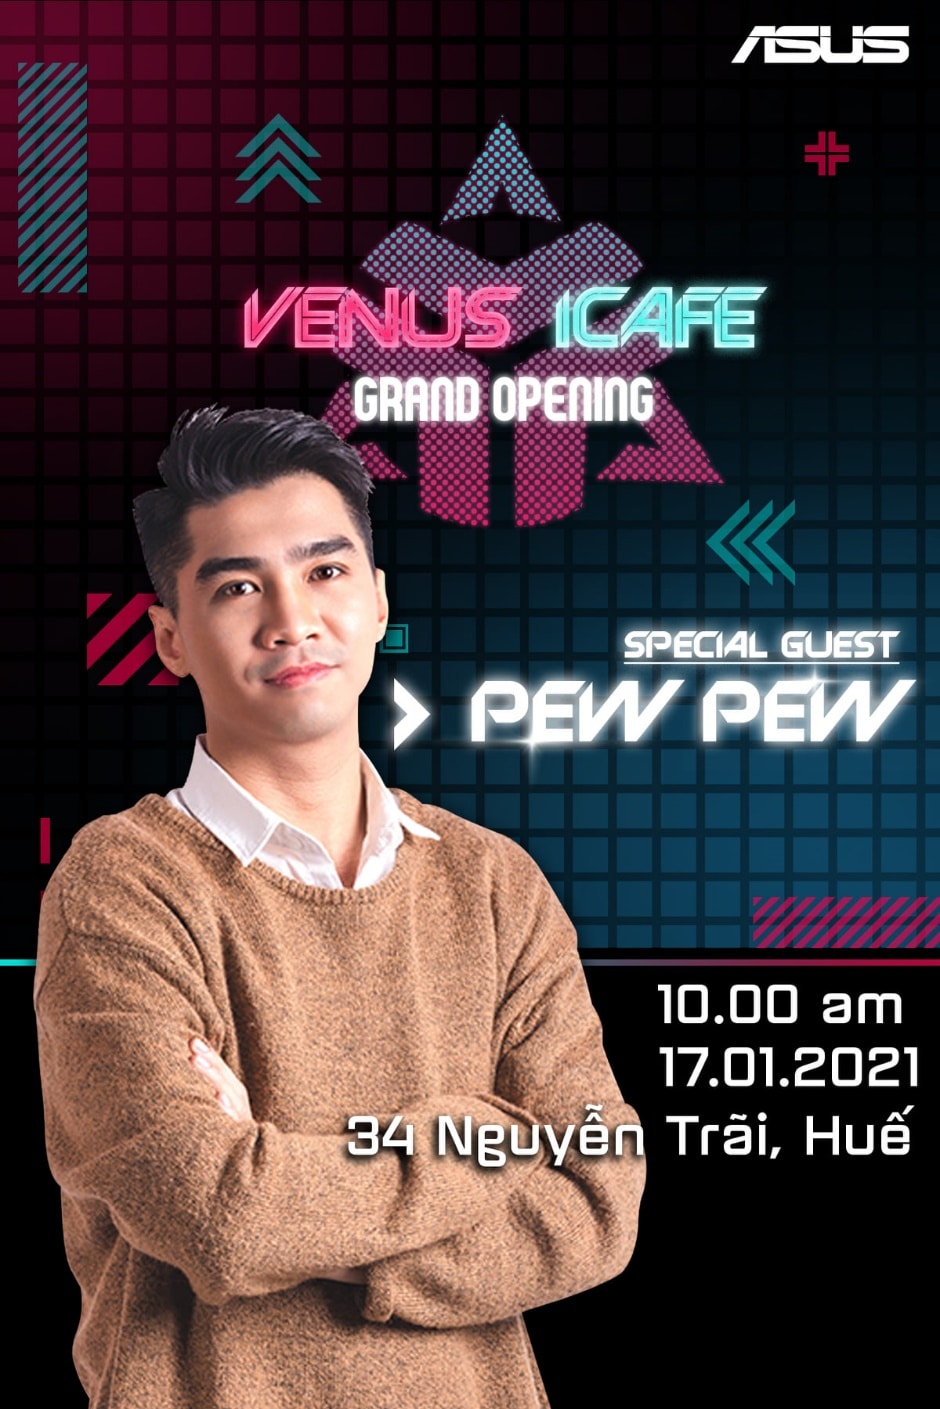 Venus Gaming khai trương cyber mới tại Huế vào ngày 17/01/2021